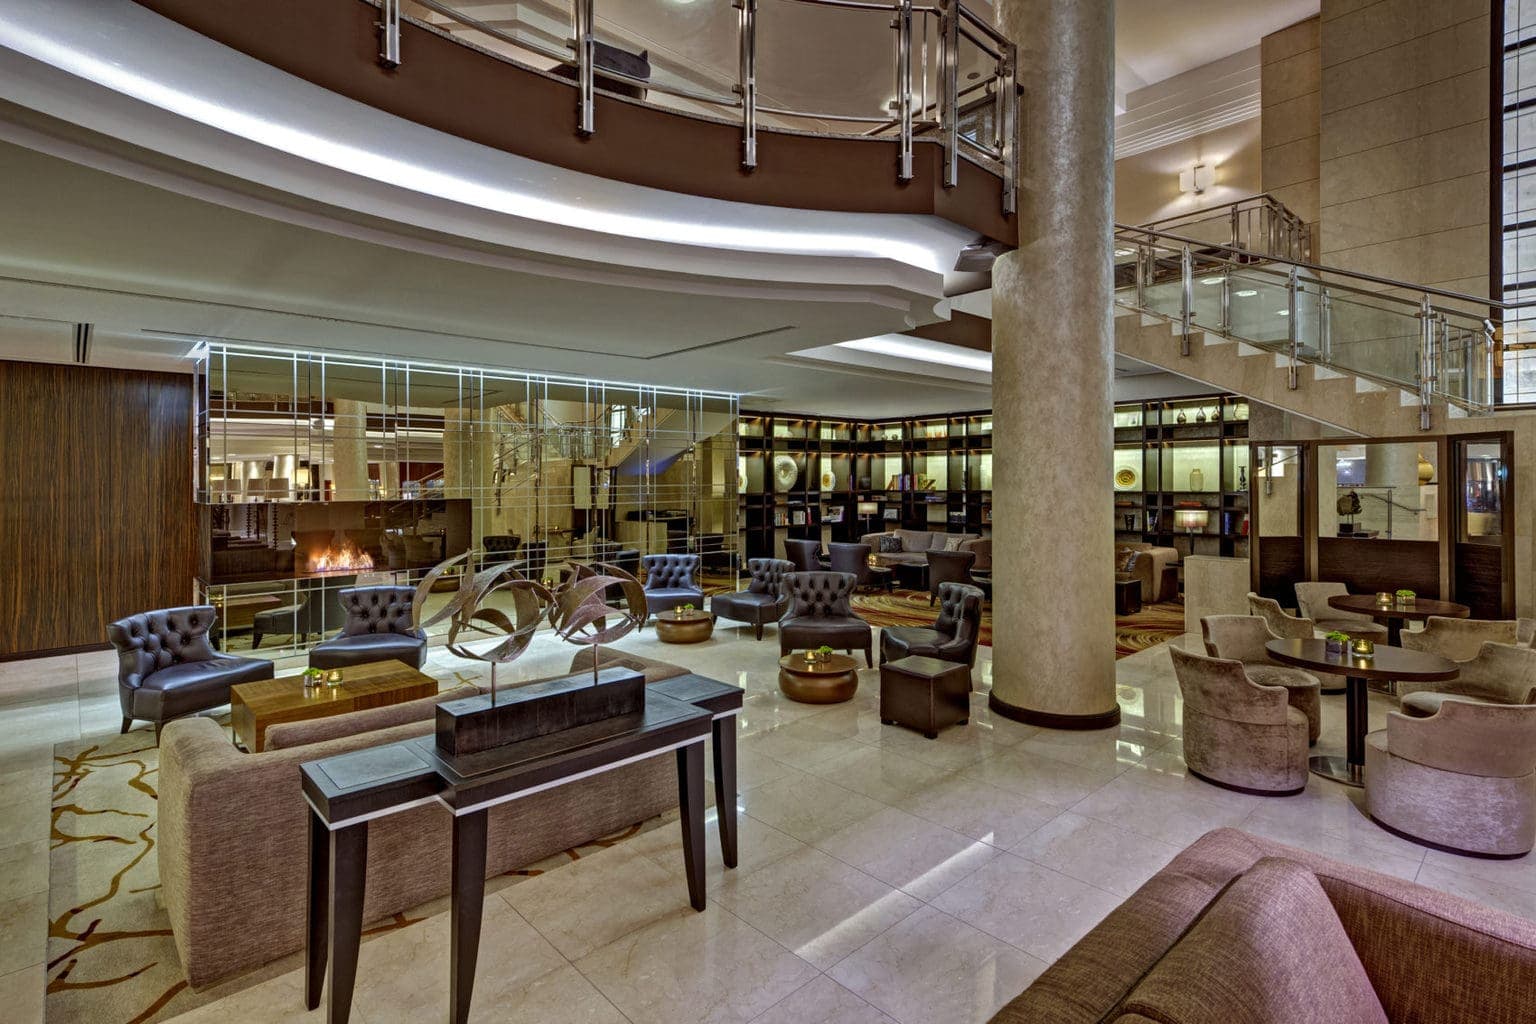 De lobby van het Hilton aan de Gendarmenmarkt, een luxe hotel in Berlijn